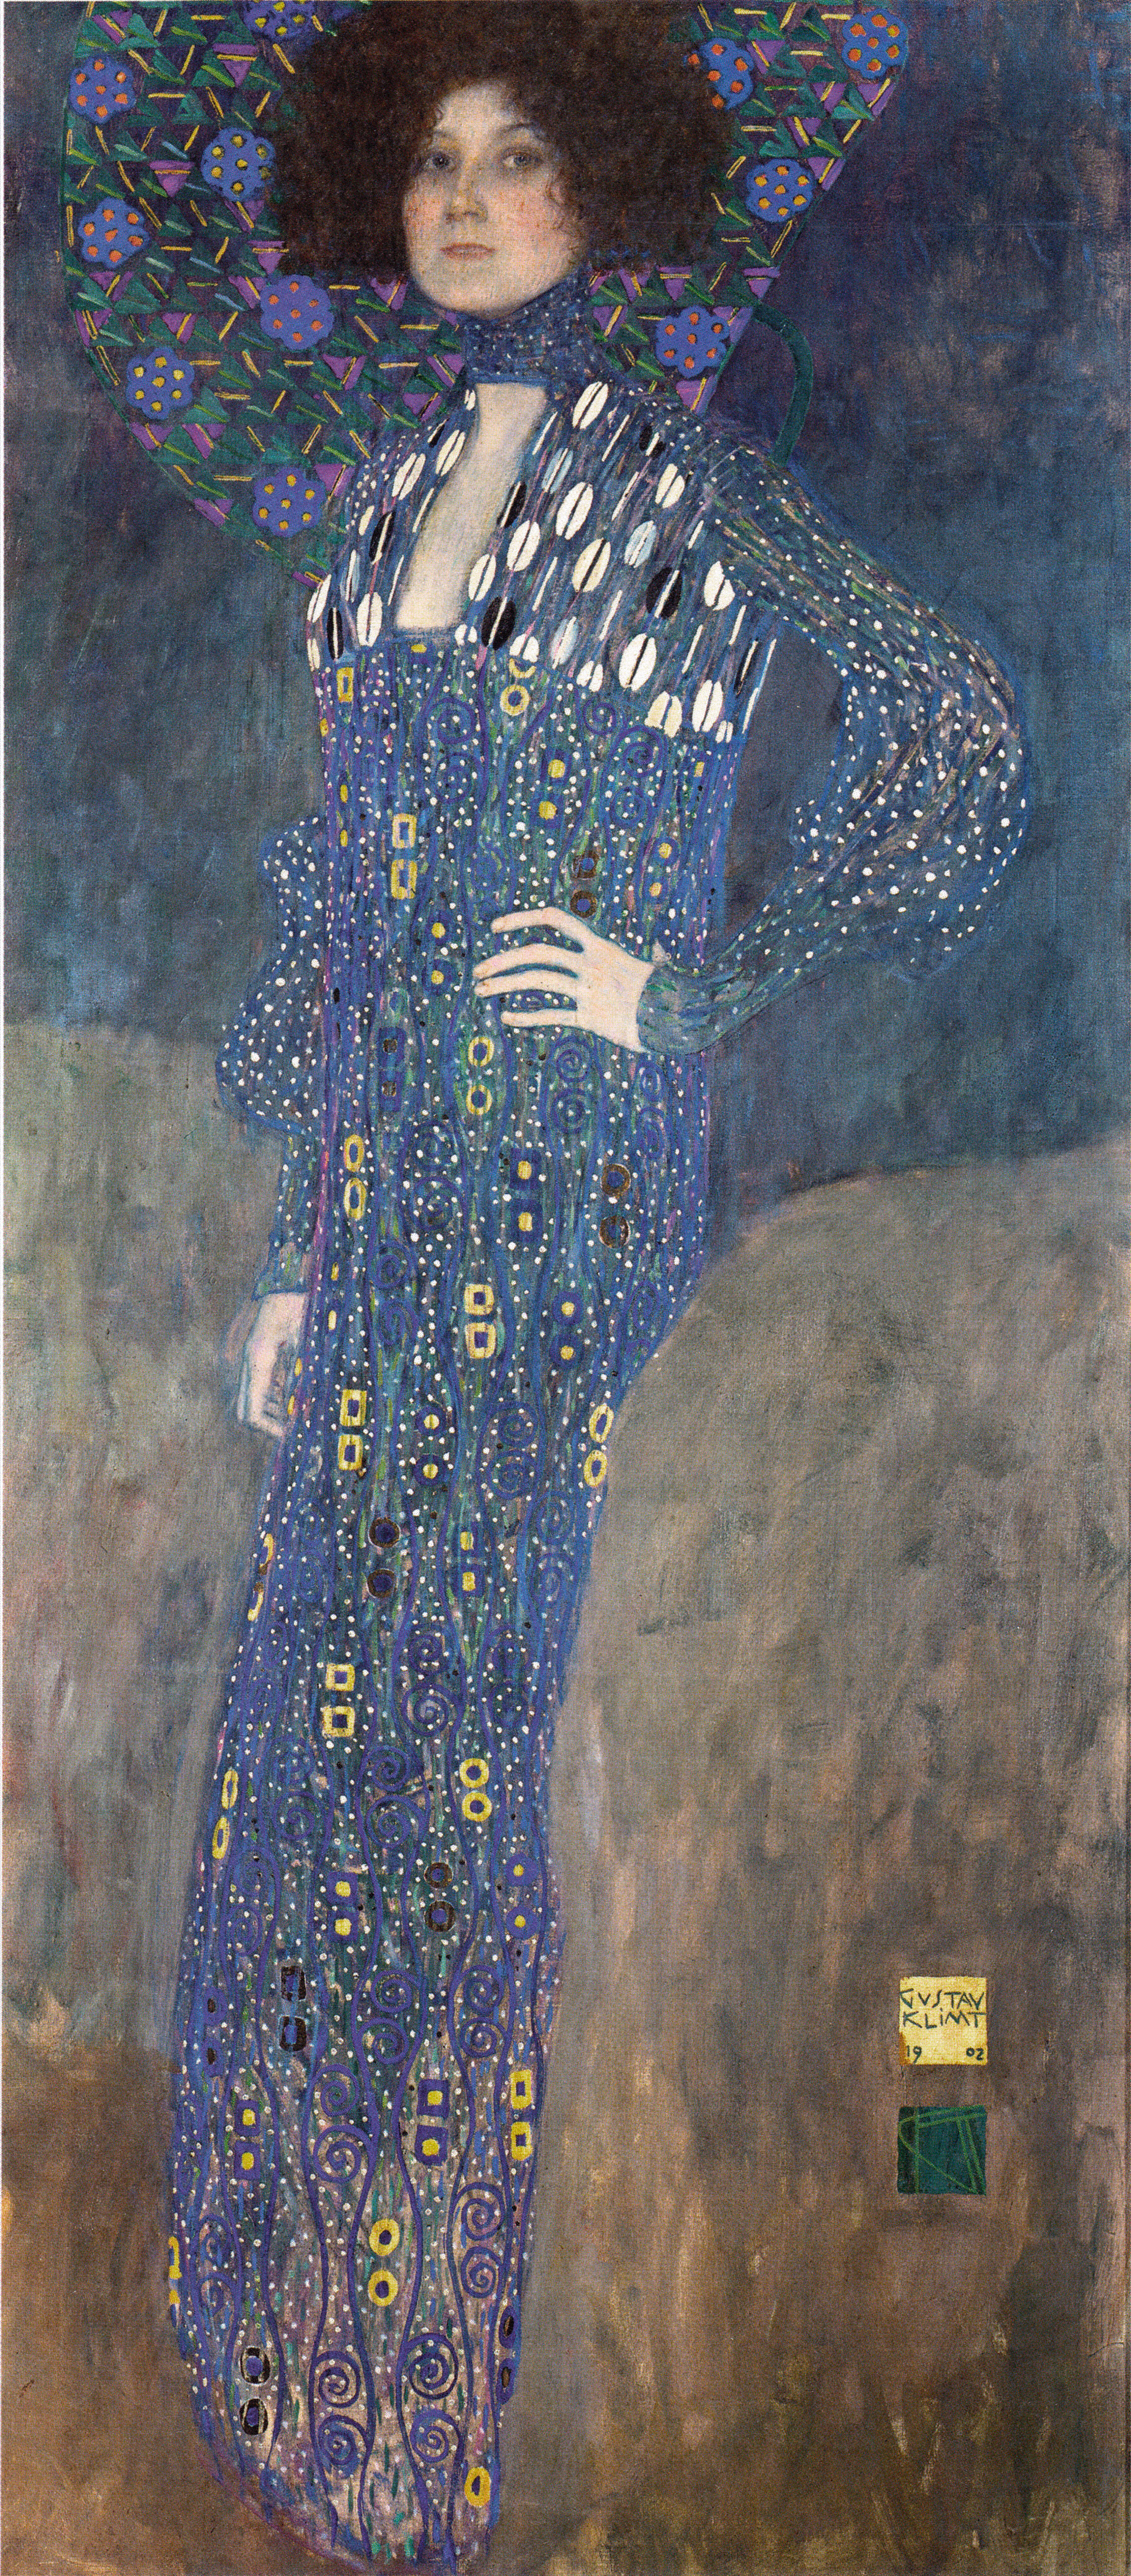 エミーリエ・フレーゲの肖像 by グスタフ クリムト - 1902年 - 178 × 80 cm 